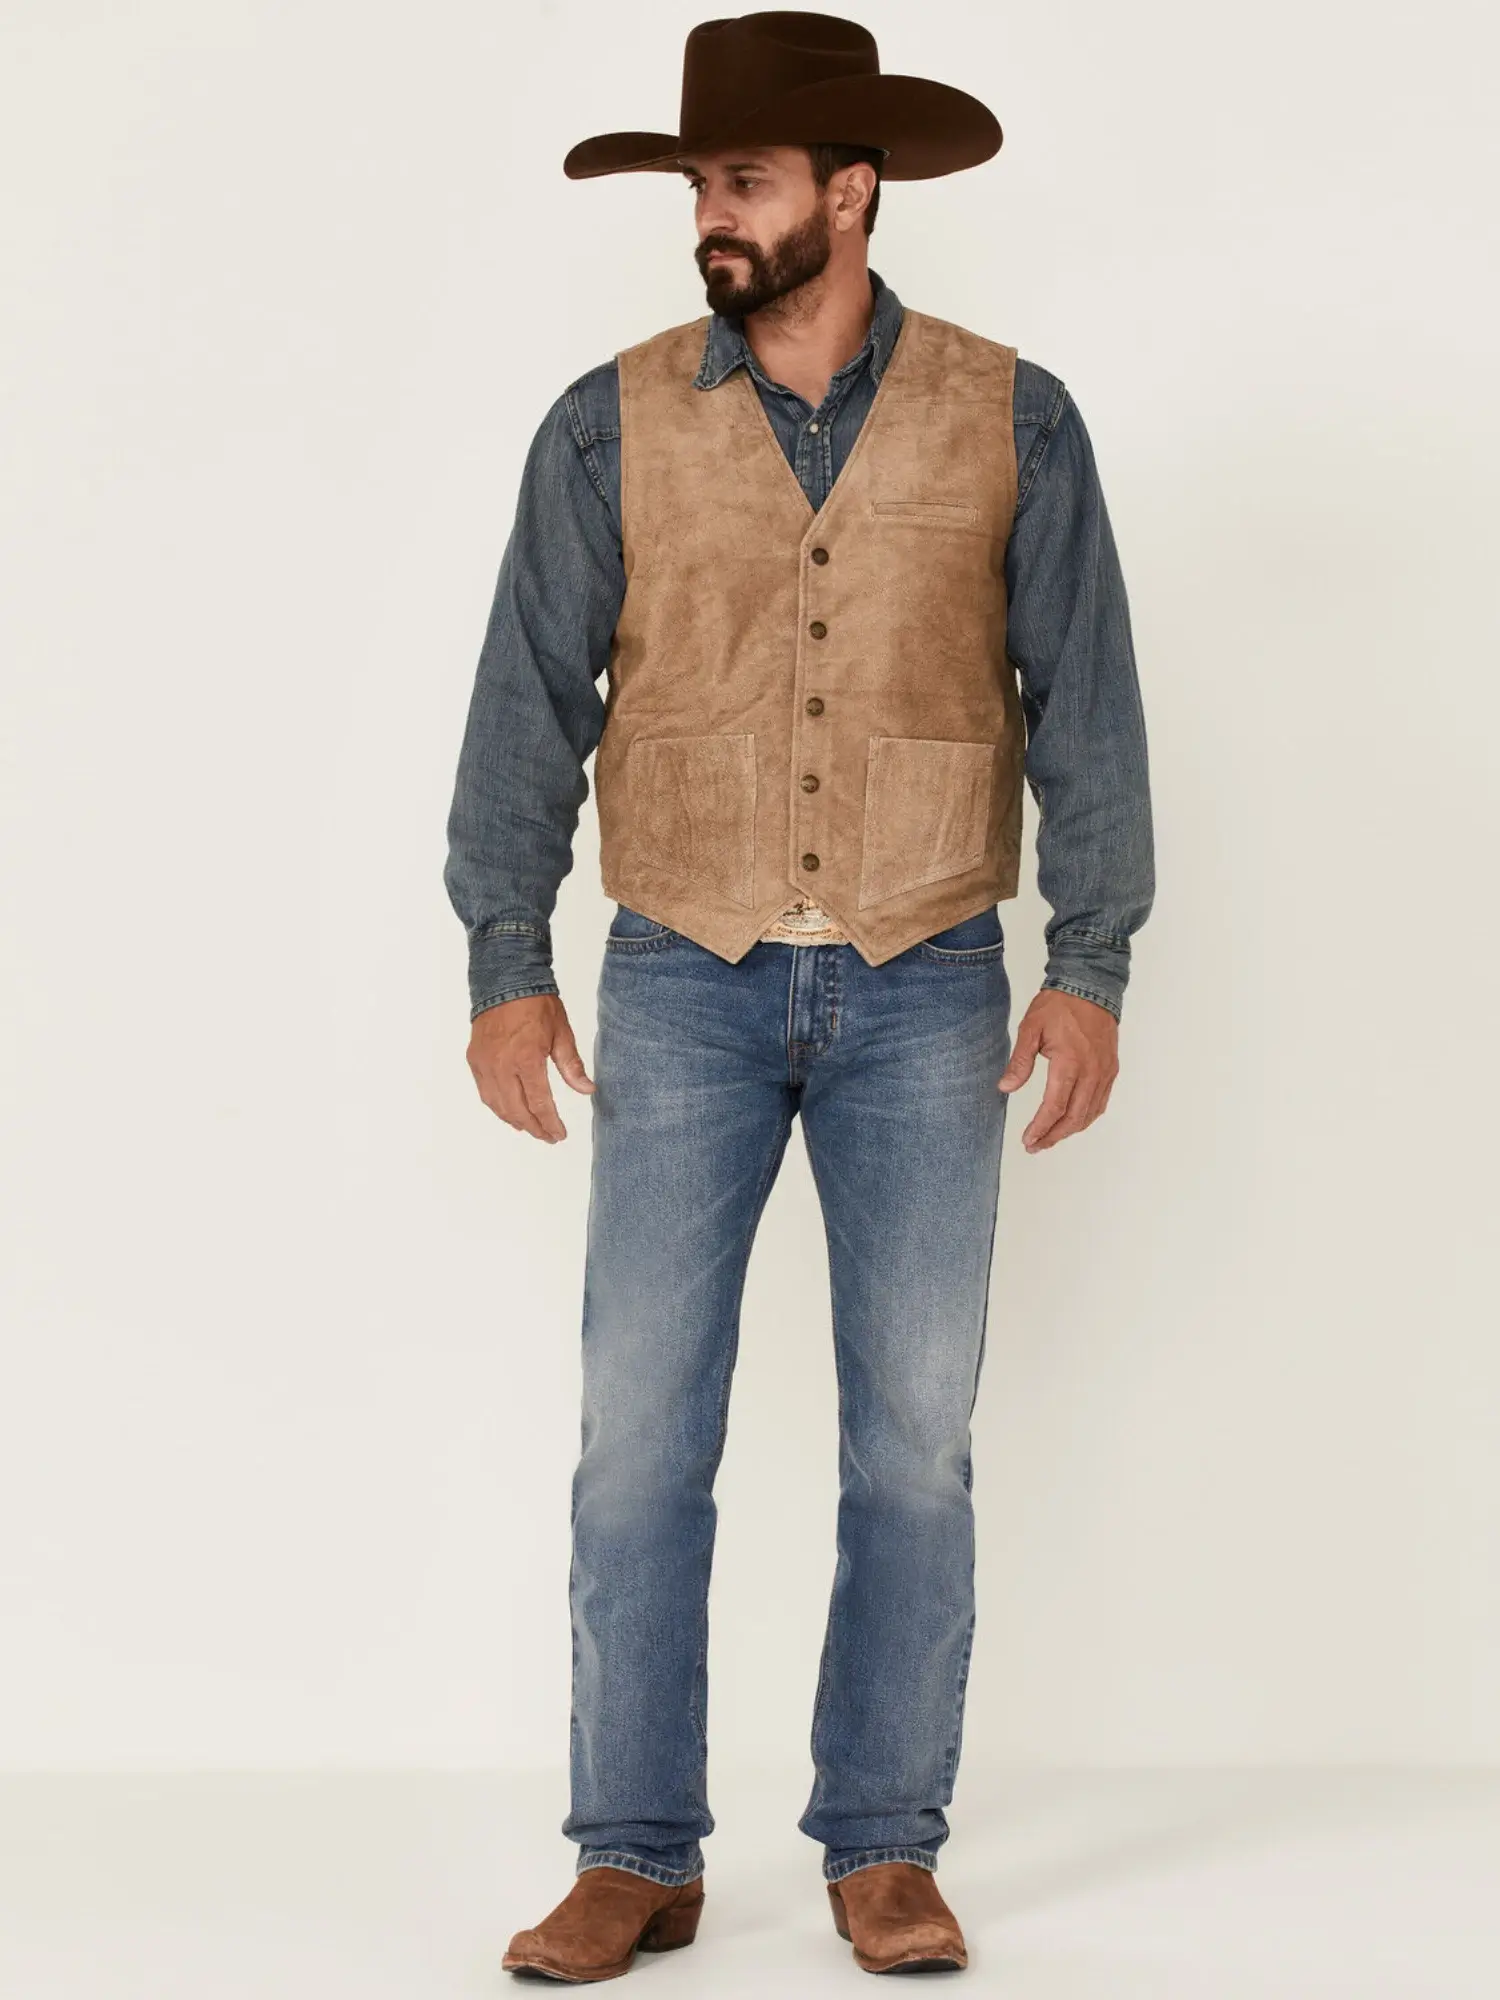 Men’s Tan Grasslands Button-Front Suede Dress Vest